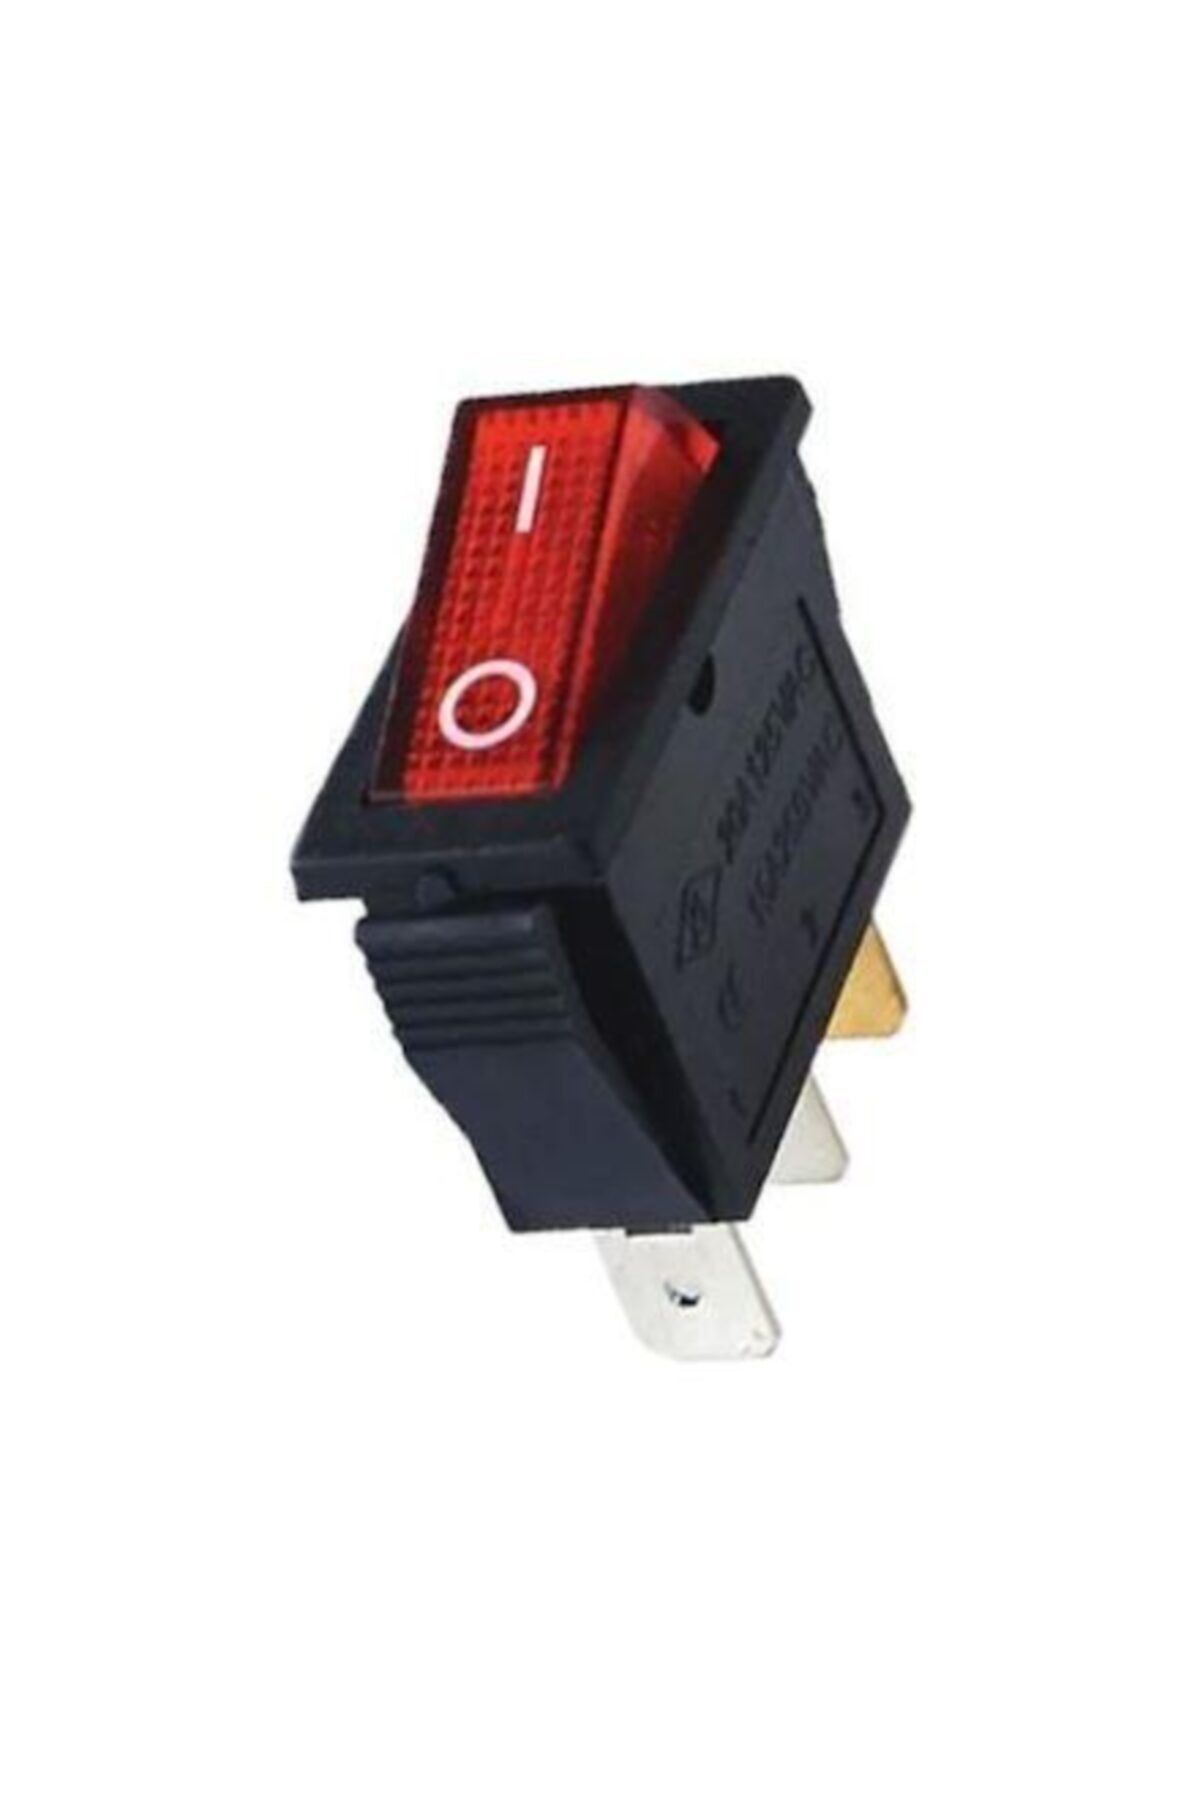 Site Hırdavat Ic-113 Kırmızı Dar Işıklı Anahtar On/off Switch 3p